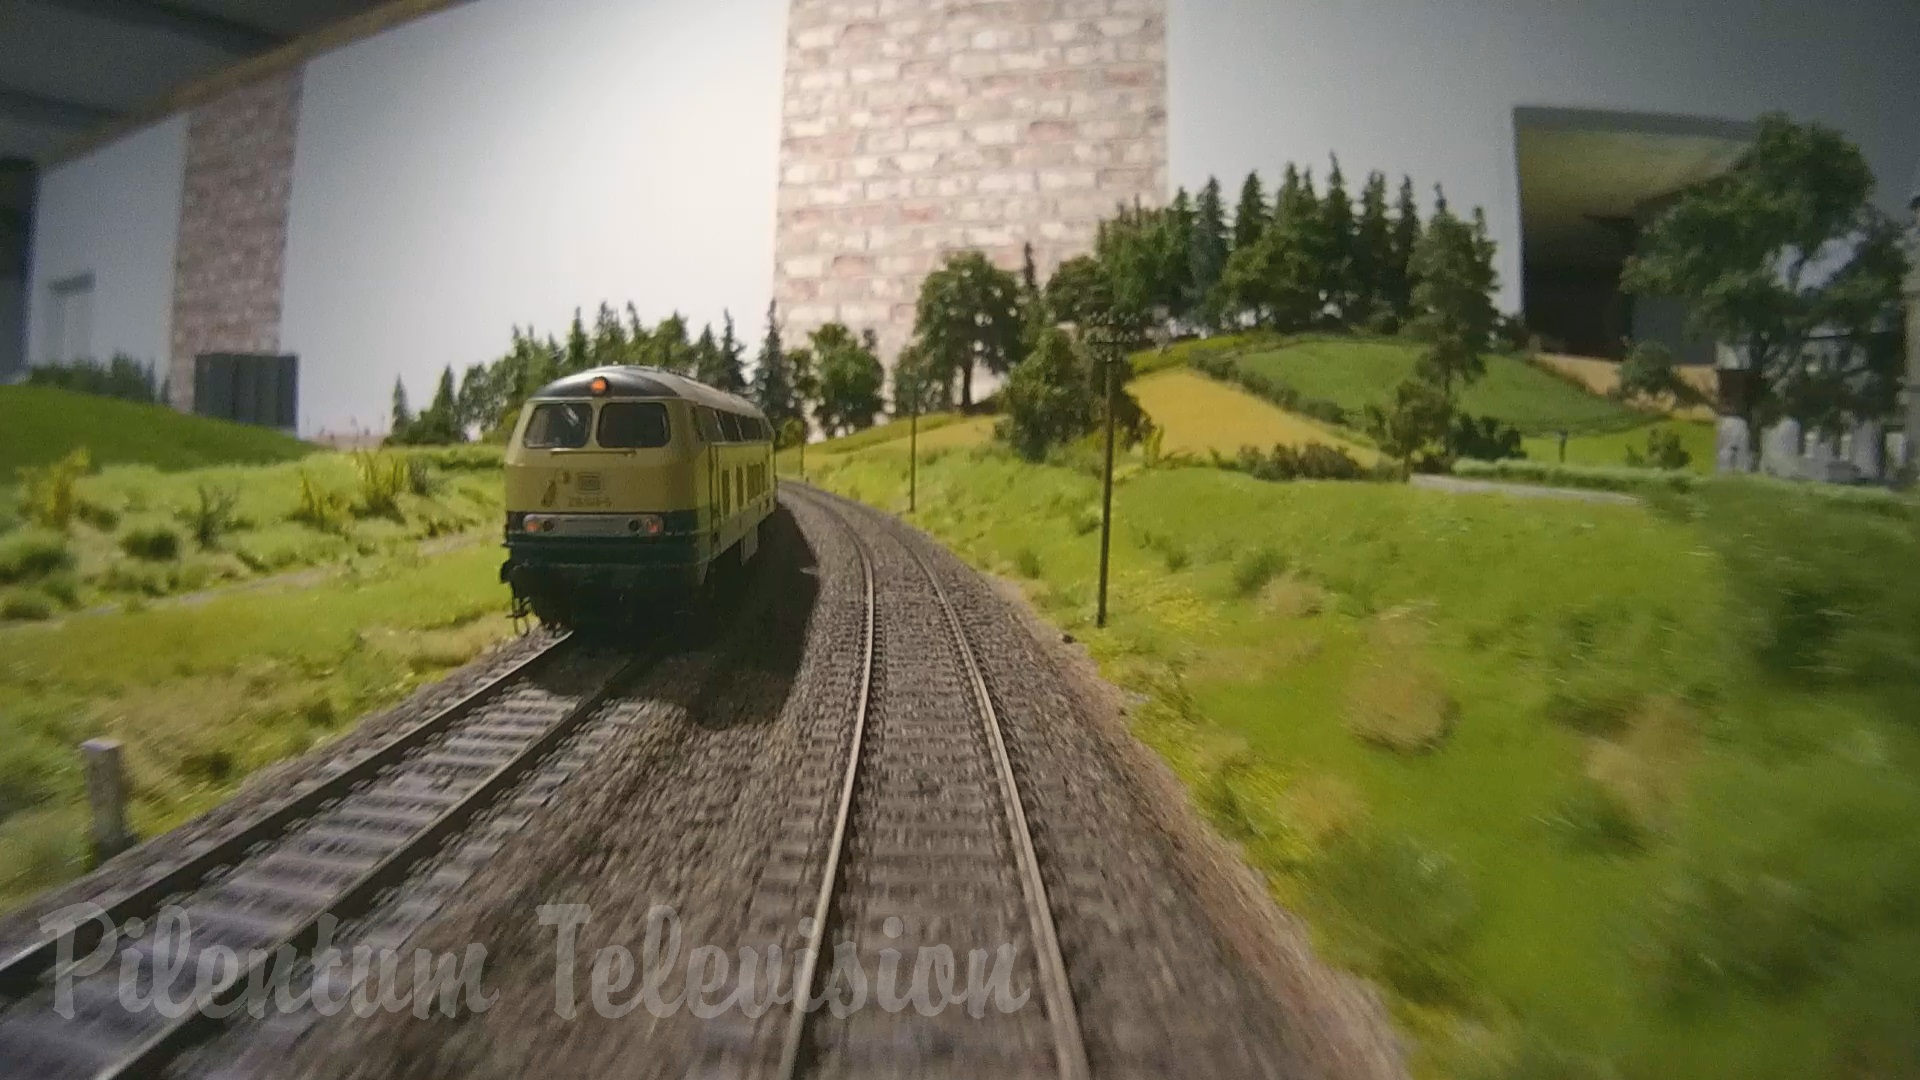 תערוכת הרכבות בגרמניה: בתערוכה משתקף העתק מדויק של הרכבות הקיימות במציאות